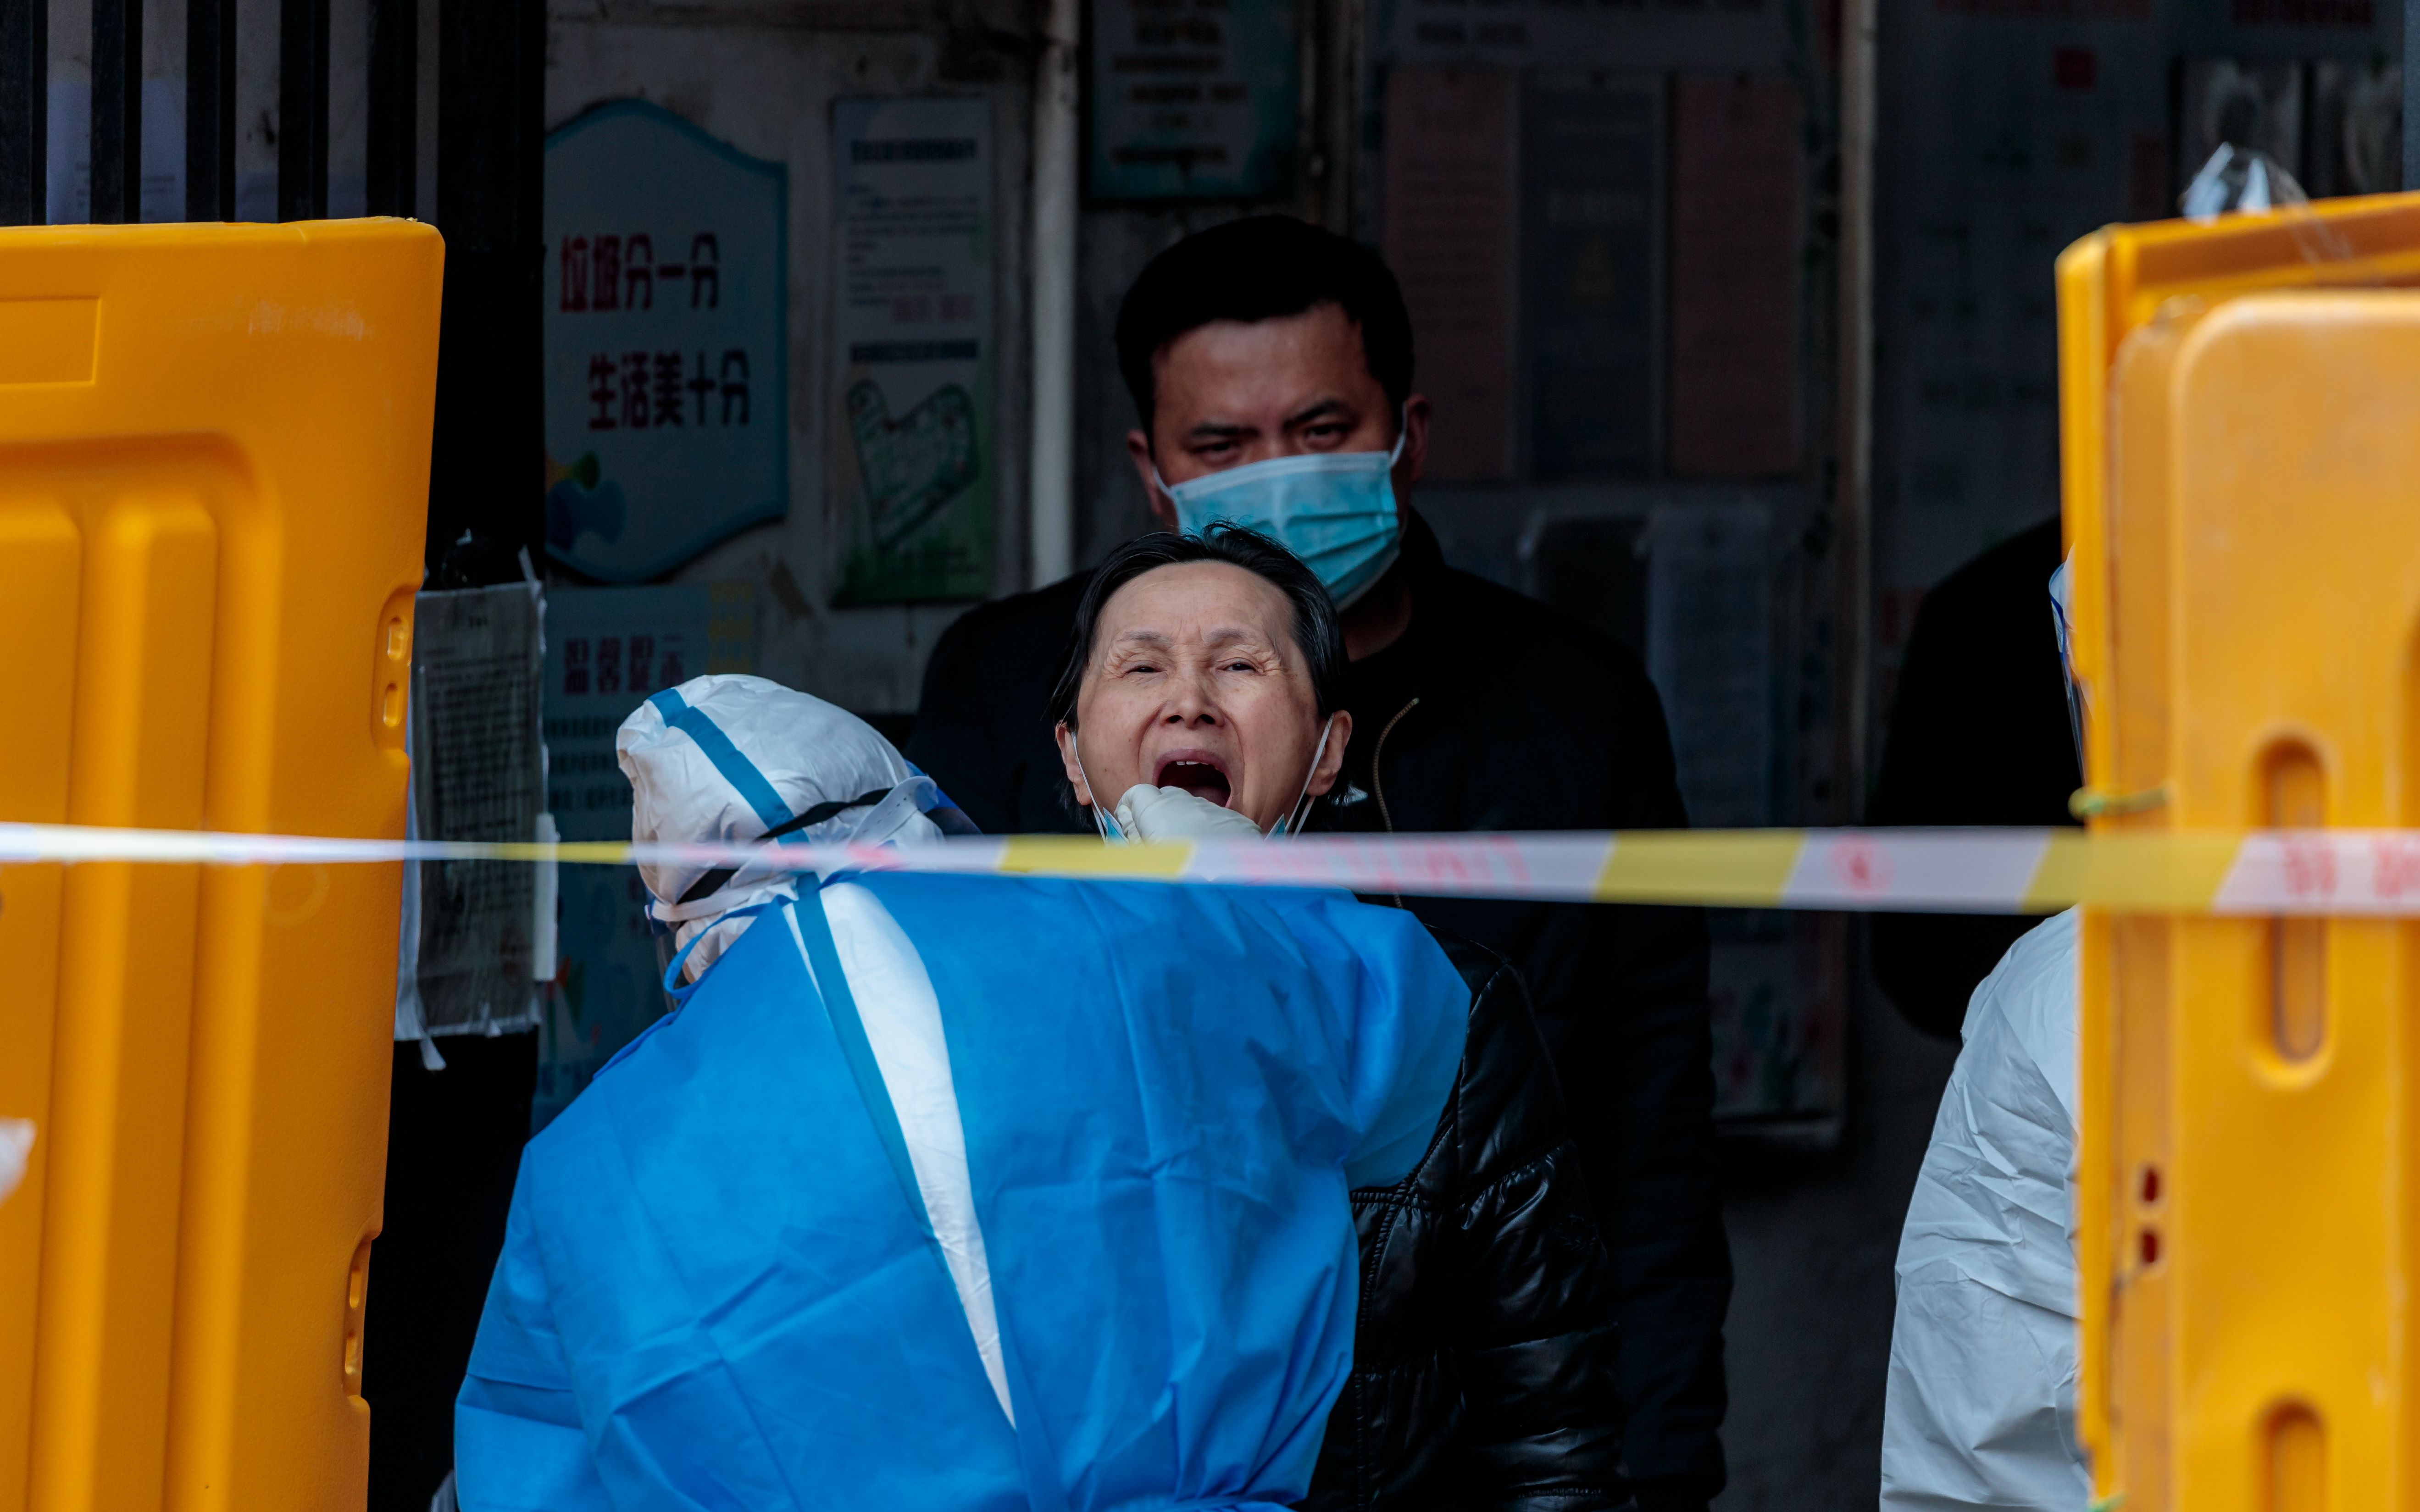 上海昨日增本土感染者4456人 超过吉林此轮疫情峰值